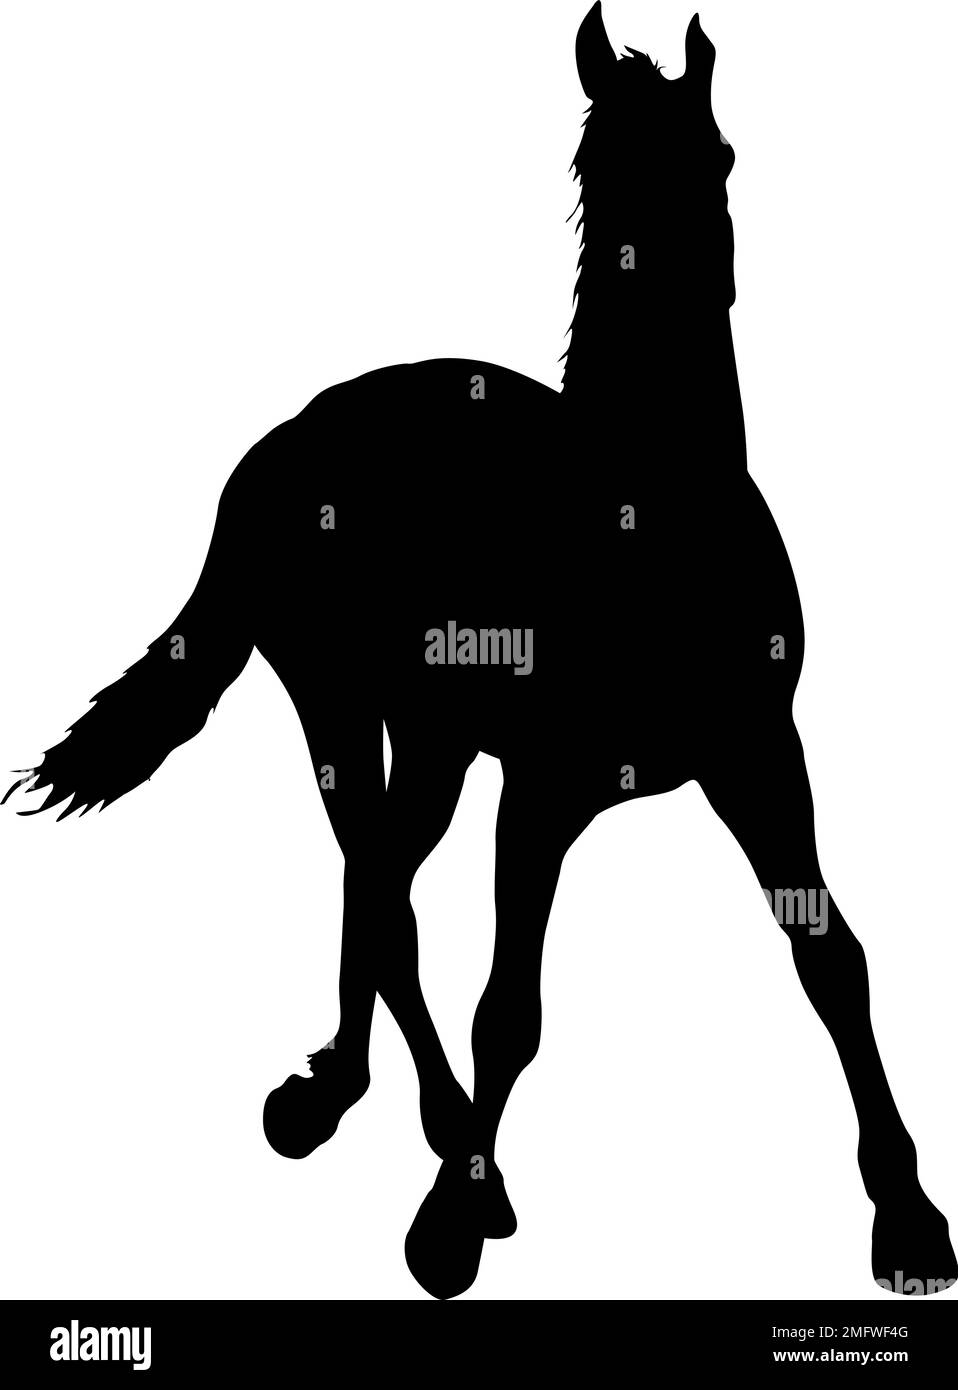 Silueta de caballo mustang negro ilustración vectorial Ilustración del Vector